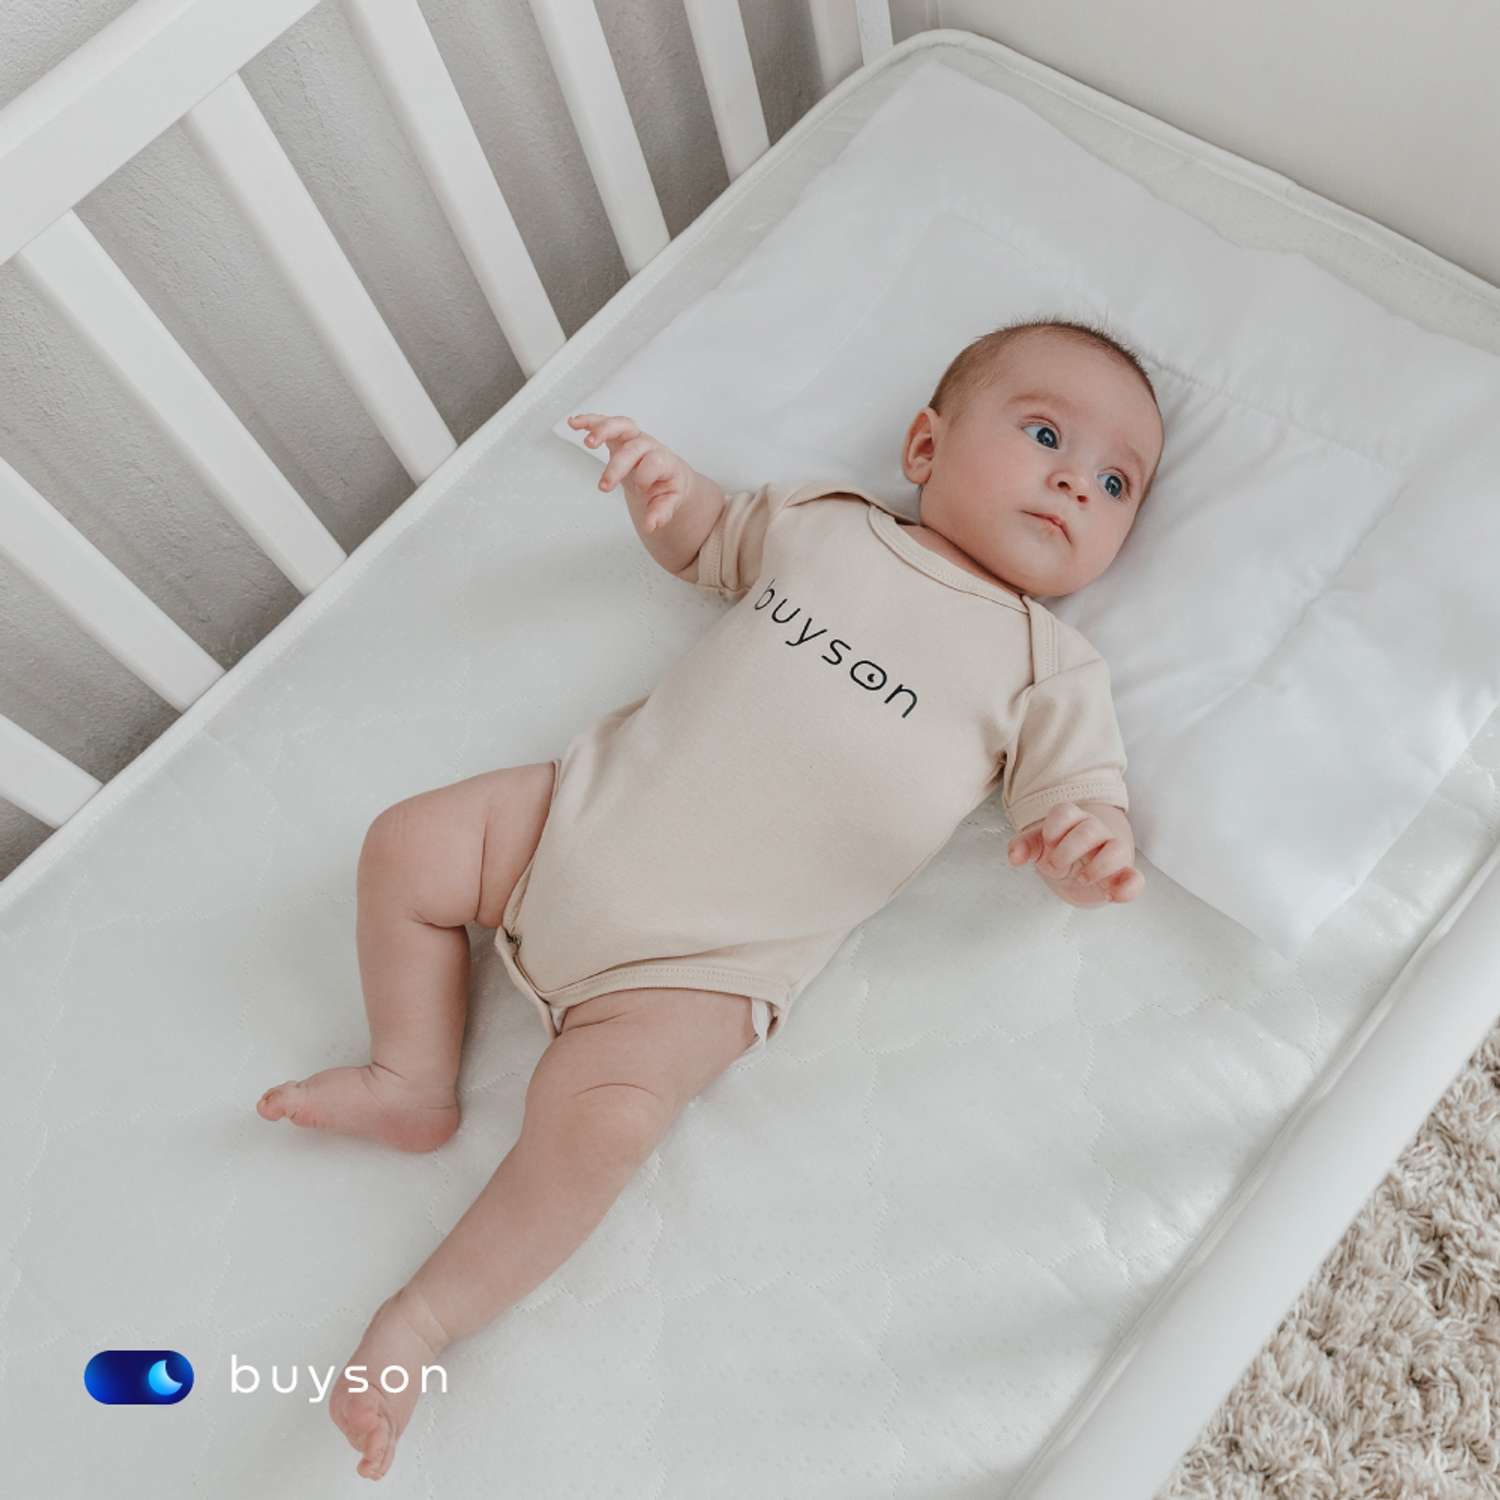 Анатомическая подушка buyson BuyMini для новорожденных от 0 до 3 лет 35х55 см высота 3 см - фото 4